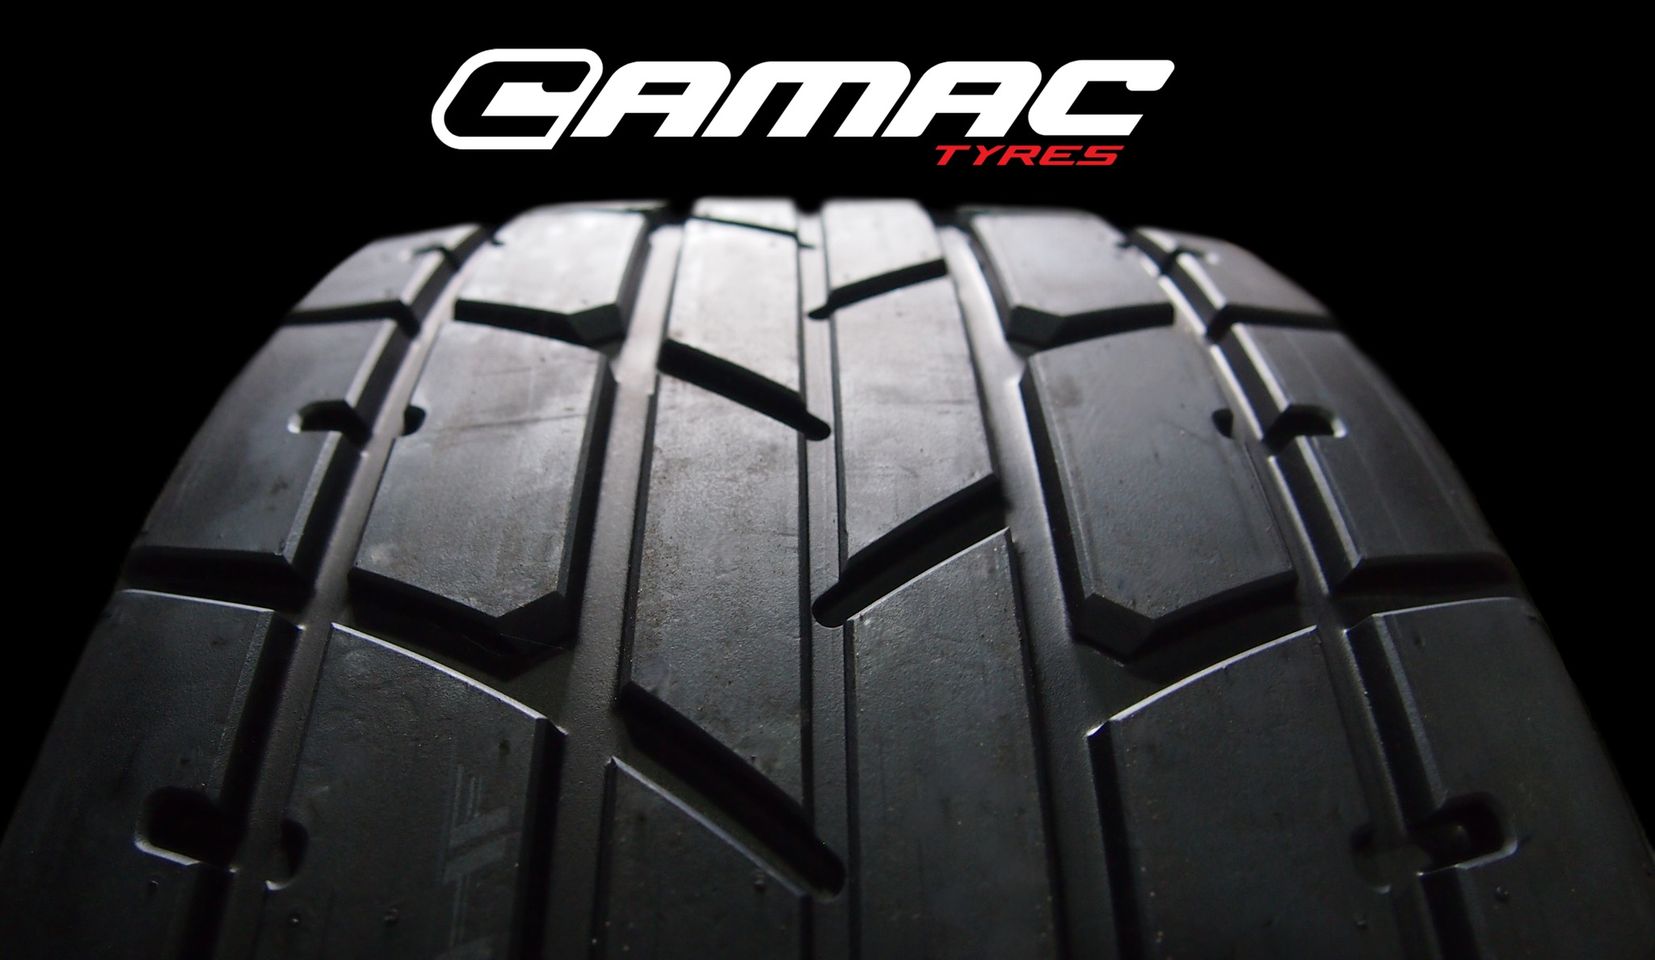 Nova Motorsport acquires Camac